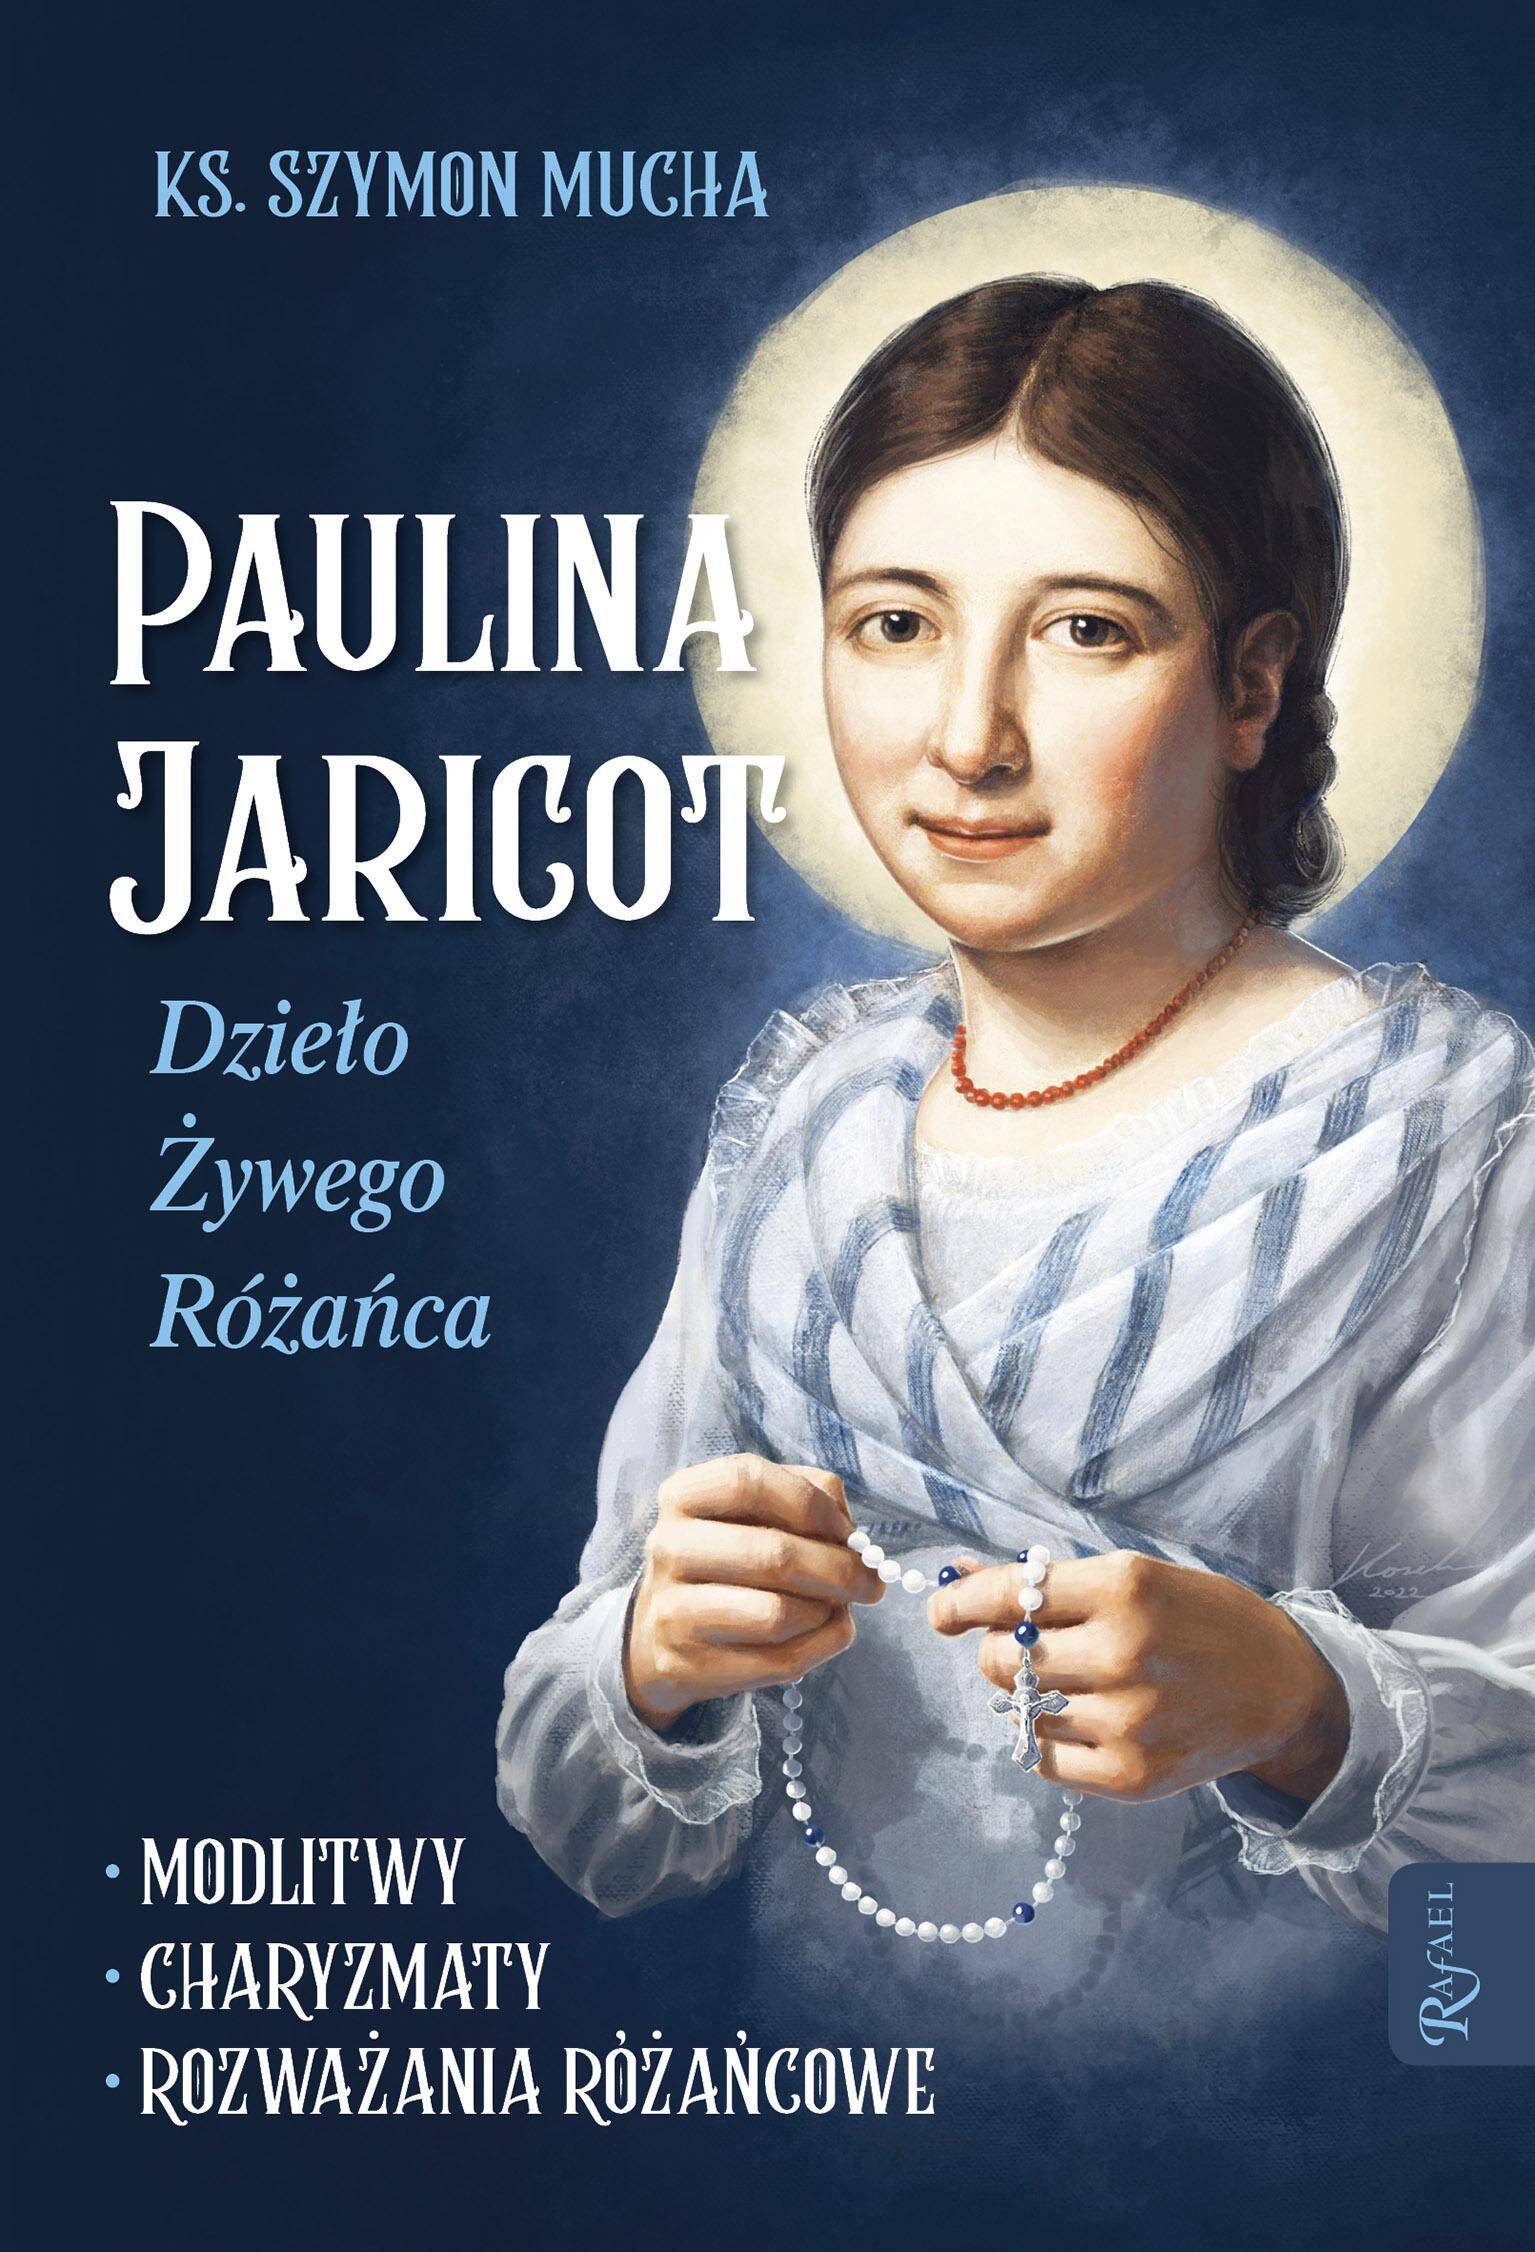 Paulina Jaricot, Dzieło Żywego Różańca, Modlitwy, Charyzmaty, Rozważania Różańcowe